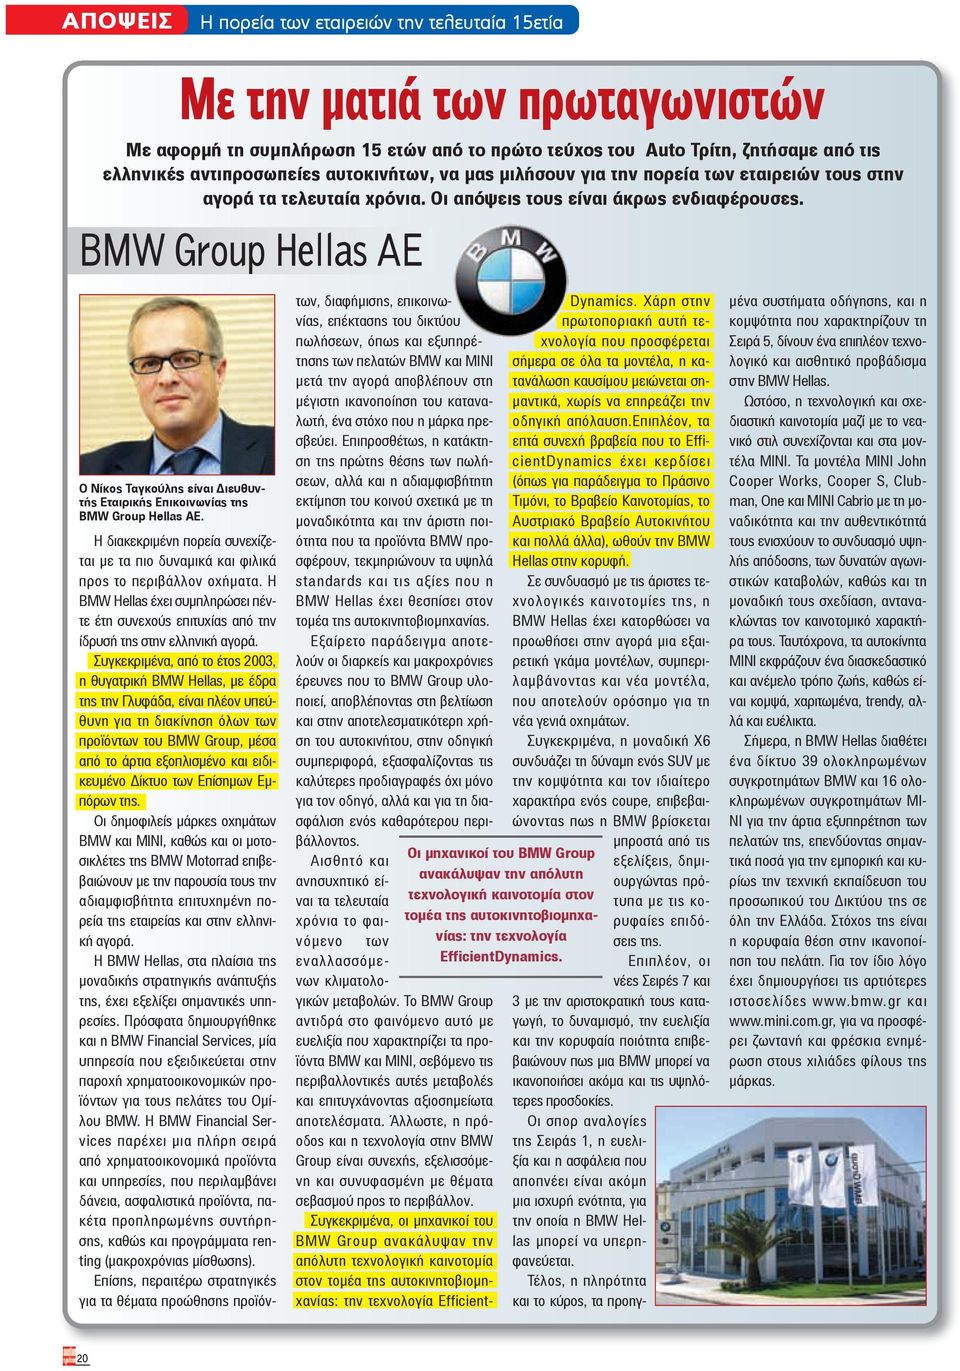 Η διακεκριμένη πορεία συνεχίζεται με τα πιο δυναμικά και φιλικά προς το περιβάλλον οχήματα. Η BMW Hellas έχει συμπληρώσει πέντε έτη συνεχούς επιτυχίας από την ίδρυσή της στην ελληνική αγορά.